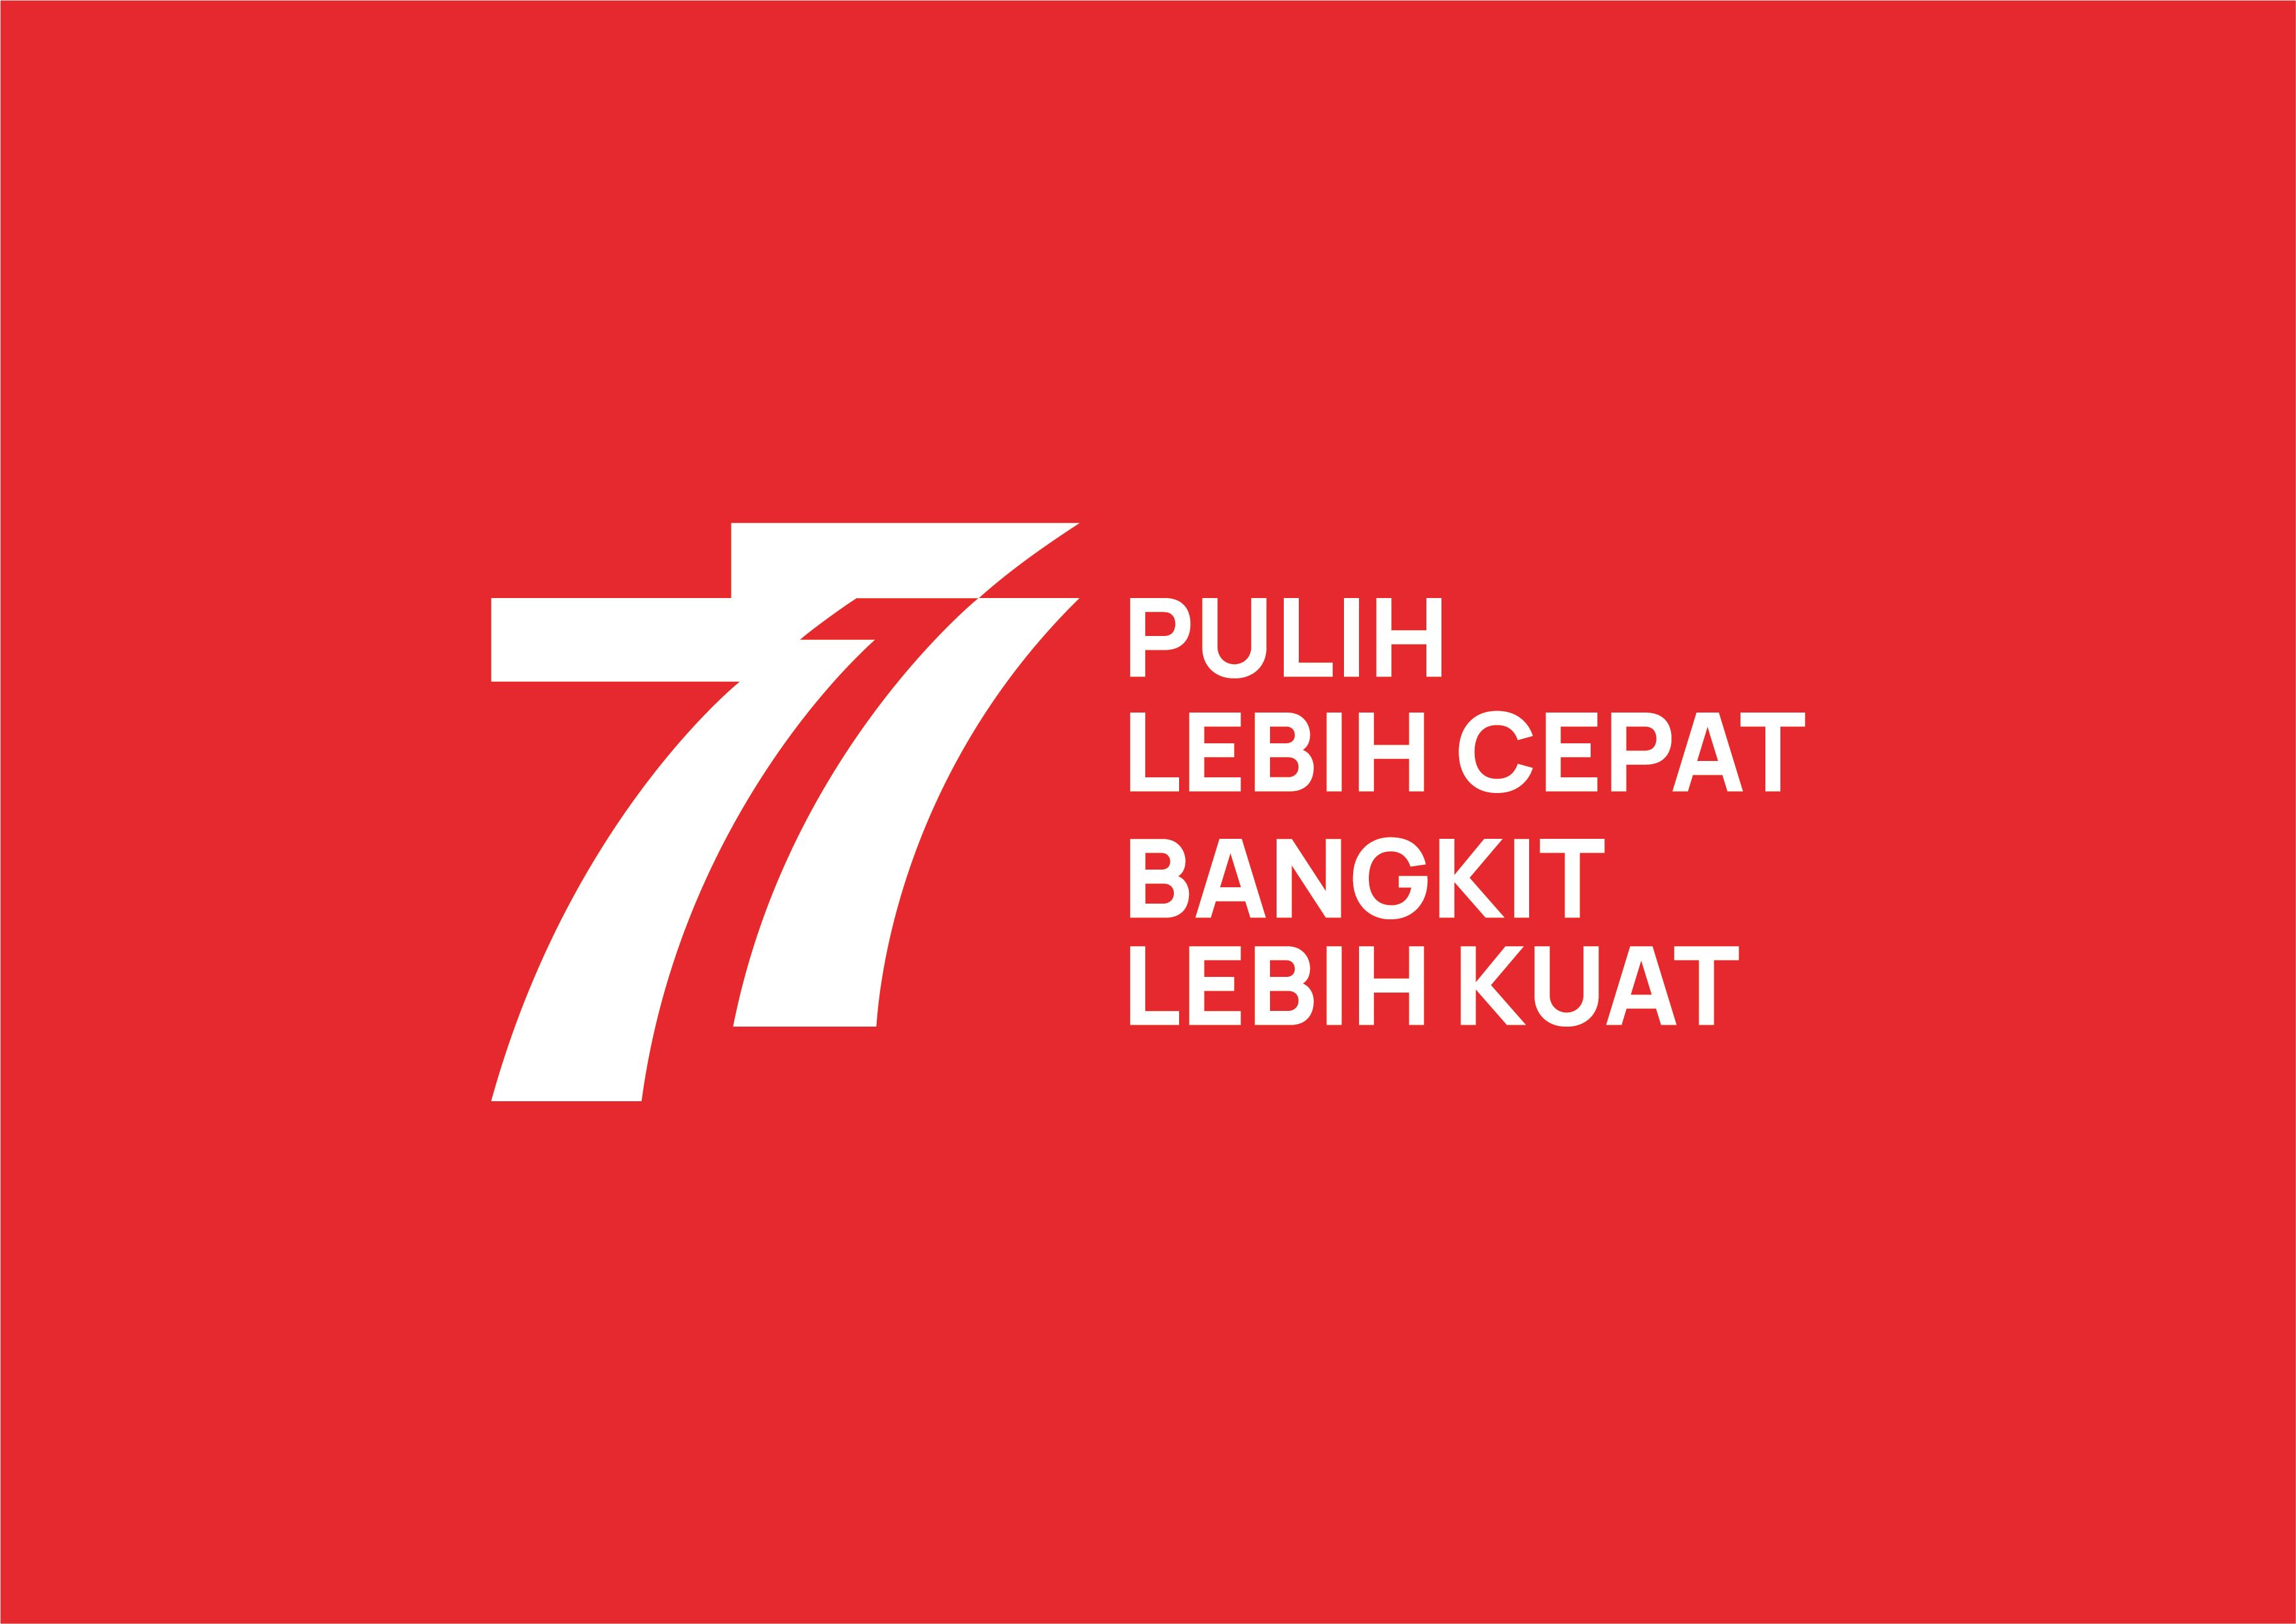 Link Download Tema Dan Logo Yang Diangkat Pada Hut Yang Ke 77 Ri Tahun 2022 Memiliki Makna Yang 4837